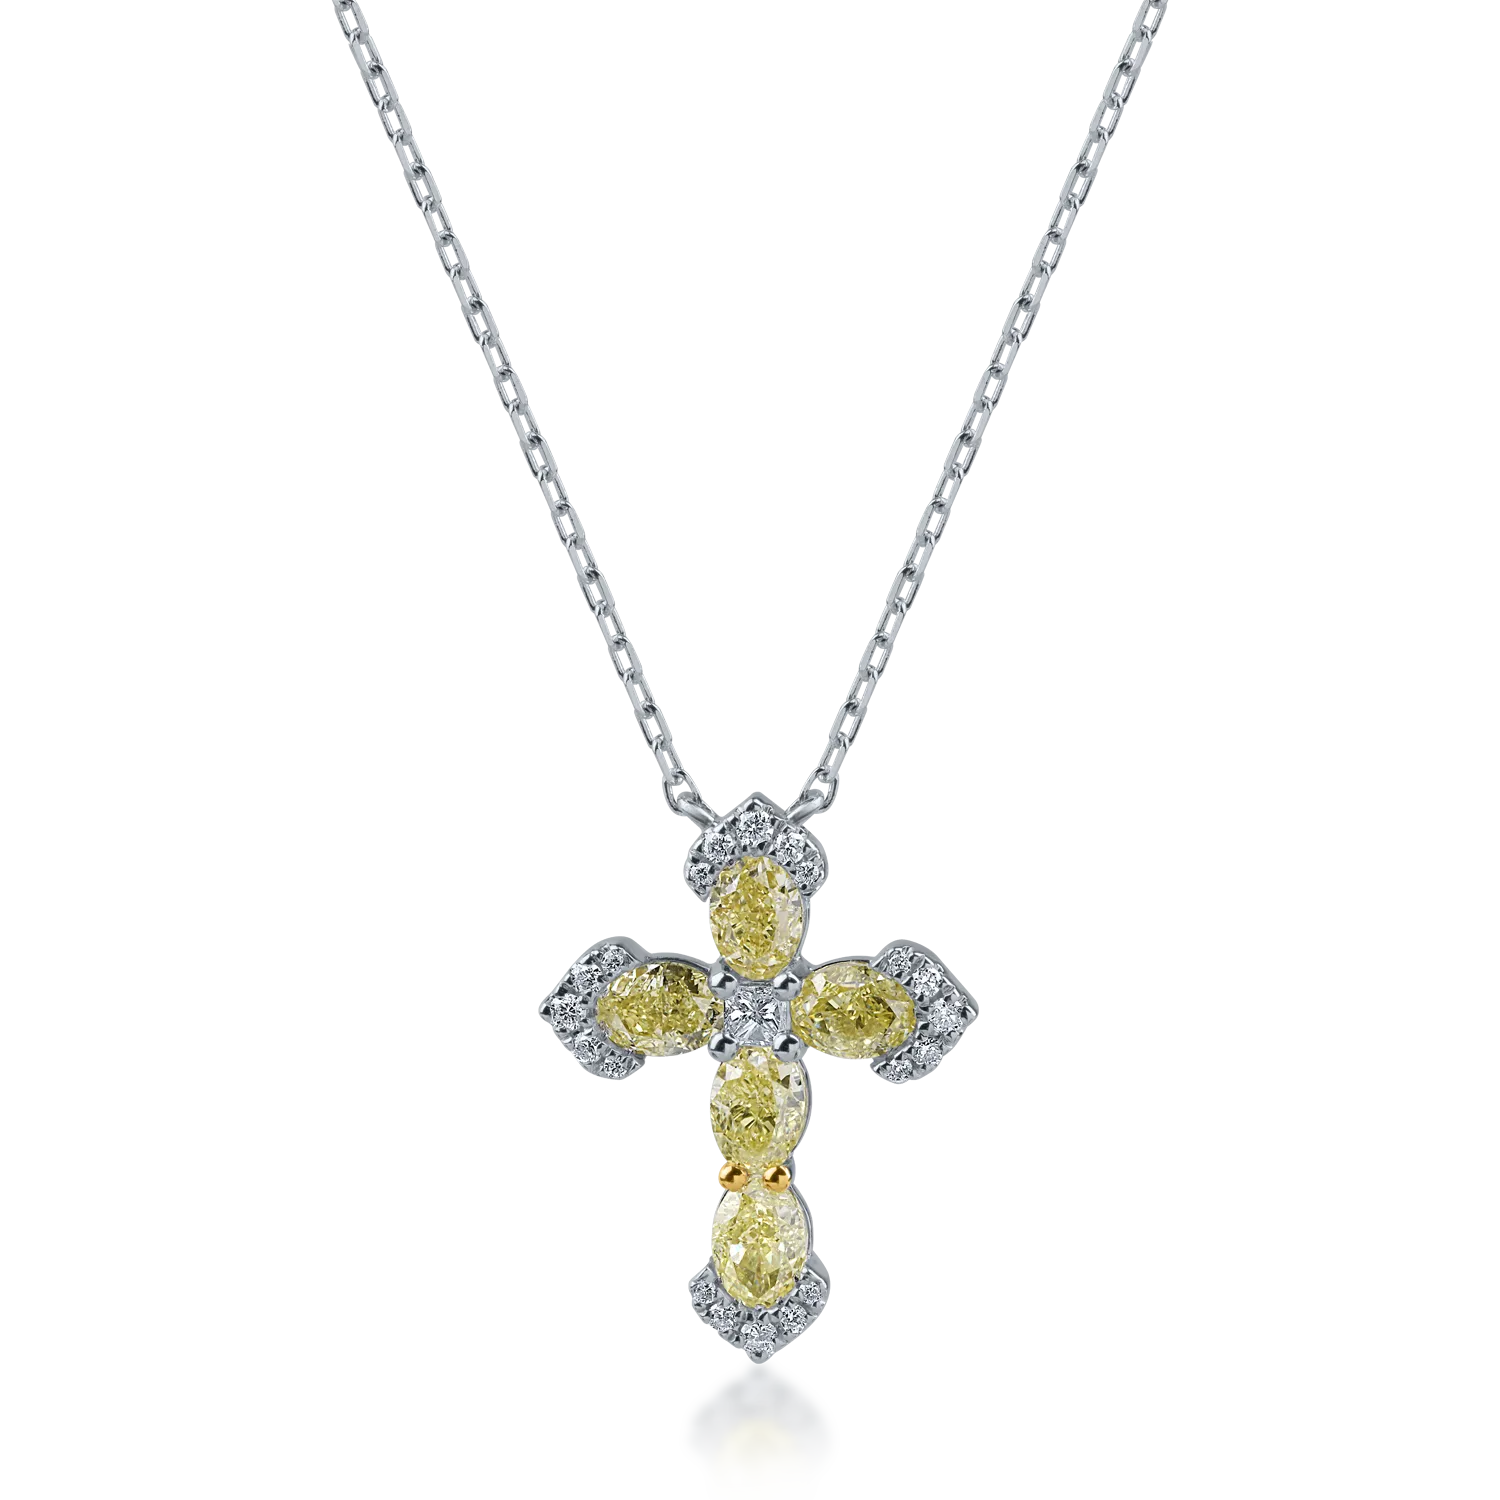 Fehérarany keresztes medál nyaklánc 1.25ct sárga gyémántokkal és 0.13ct tiszta gyémántokkal